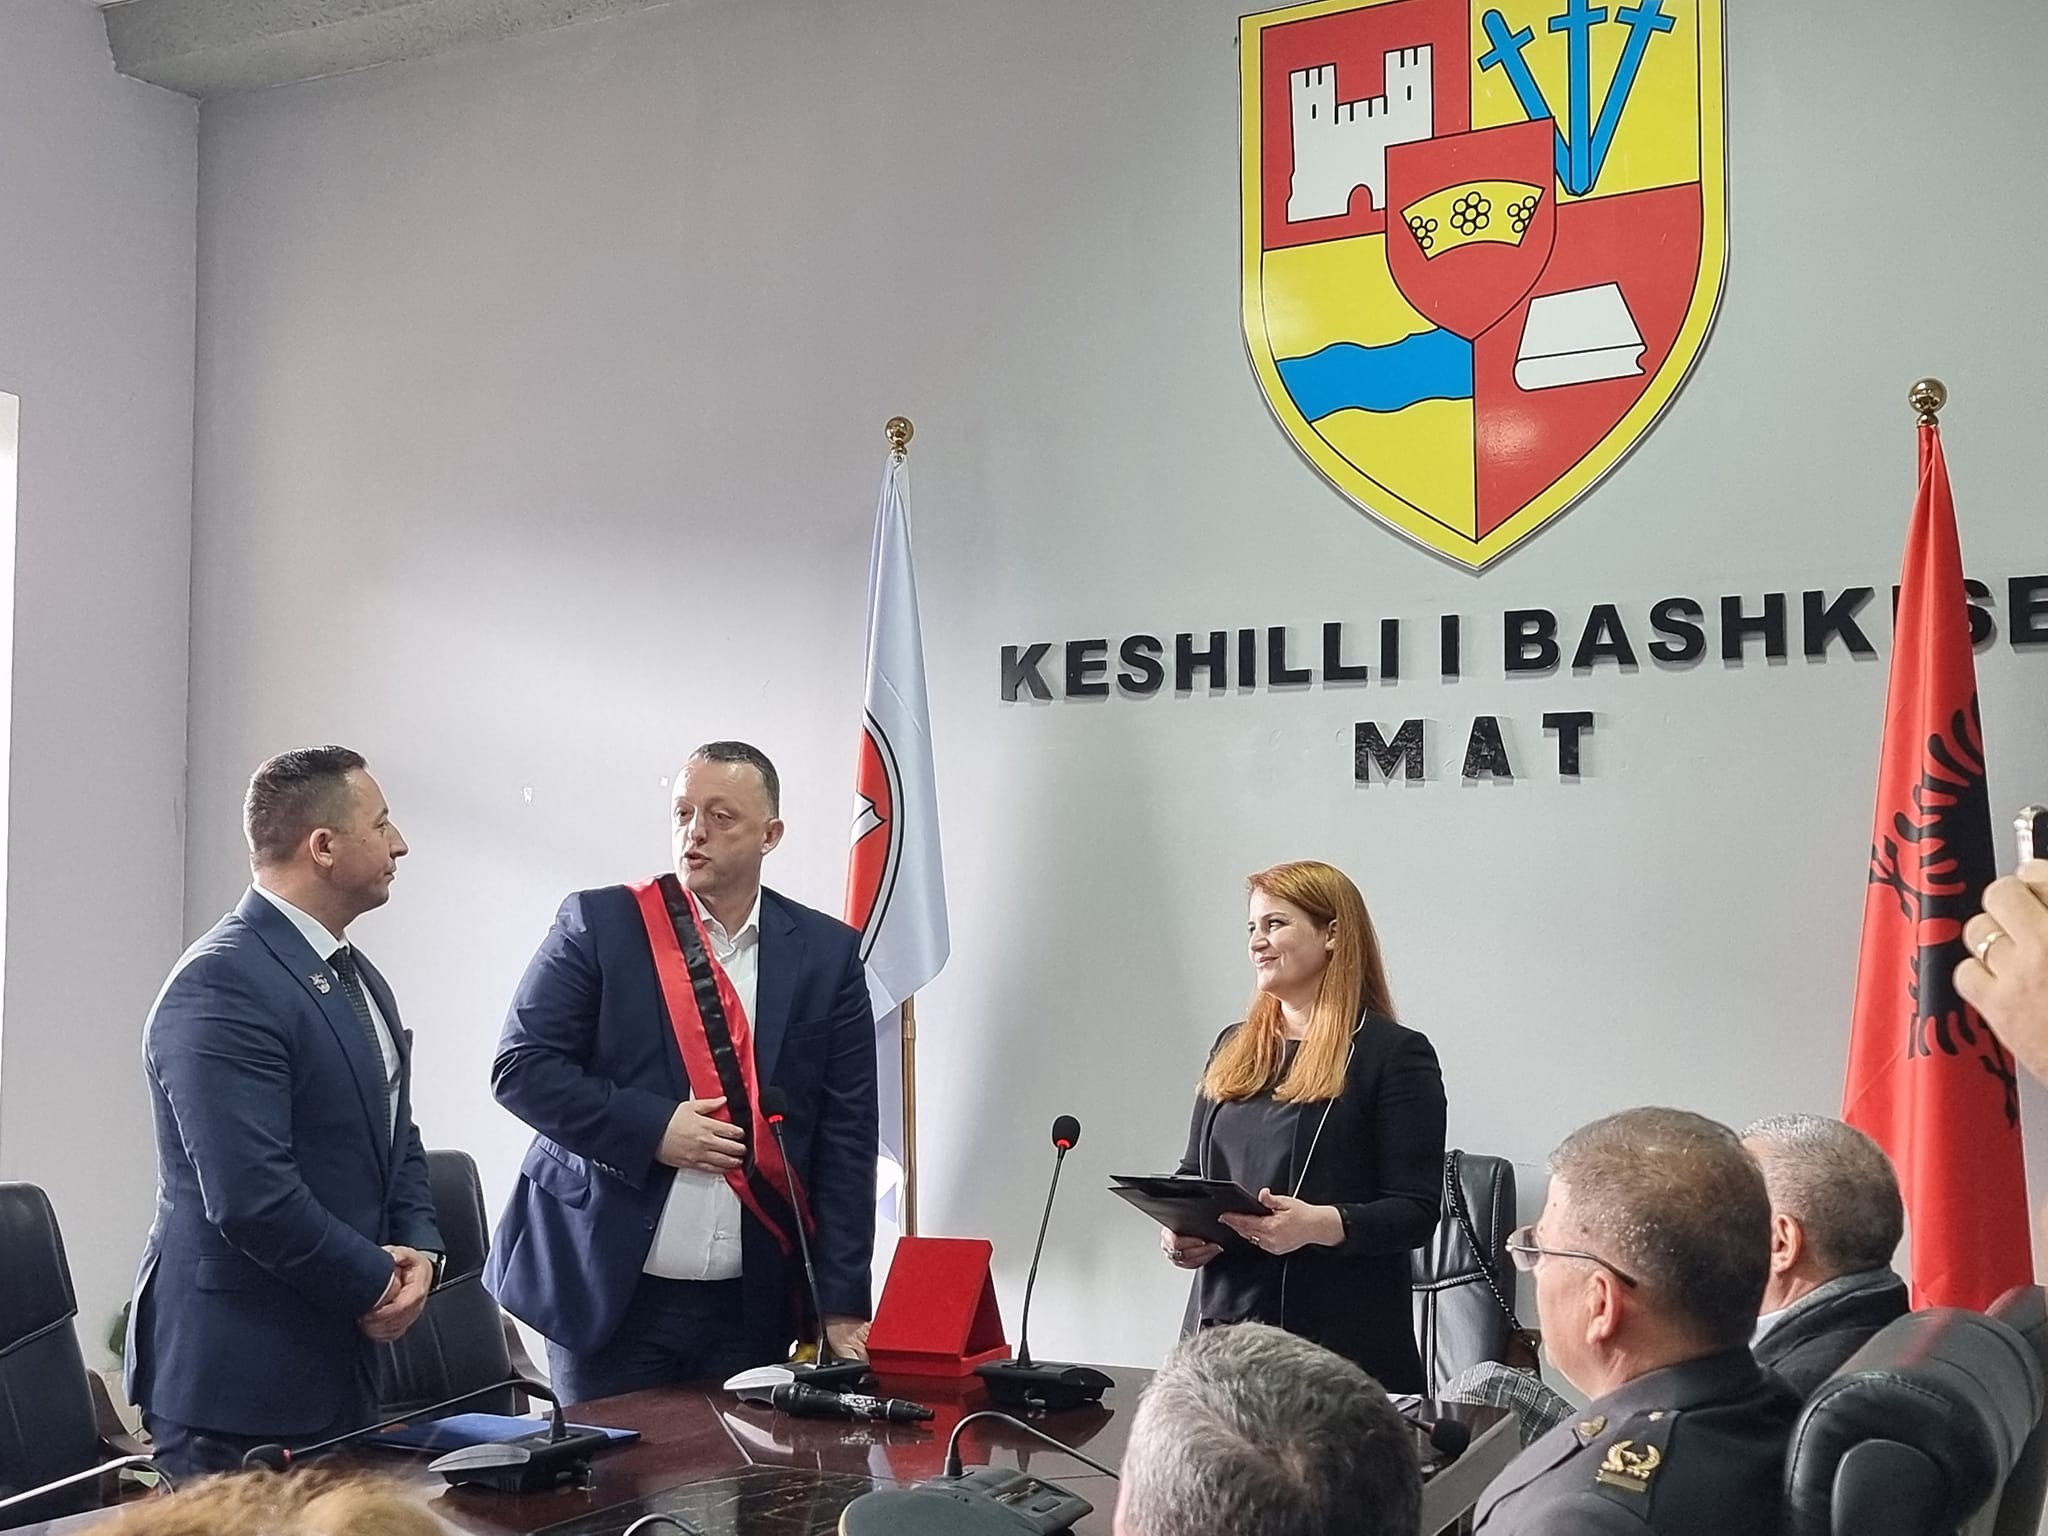  Ministri Mehaj shpallet qytetar nderi i Bashkisë së Matit në Shqipëri